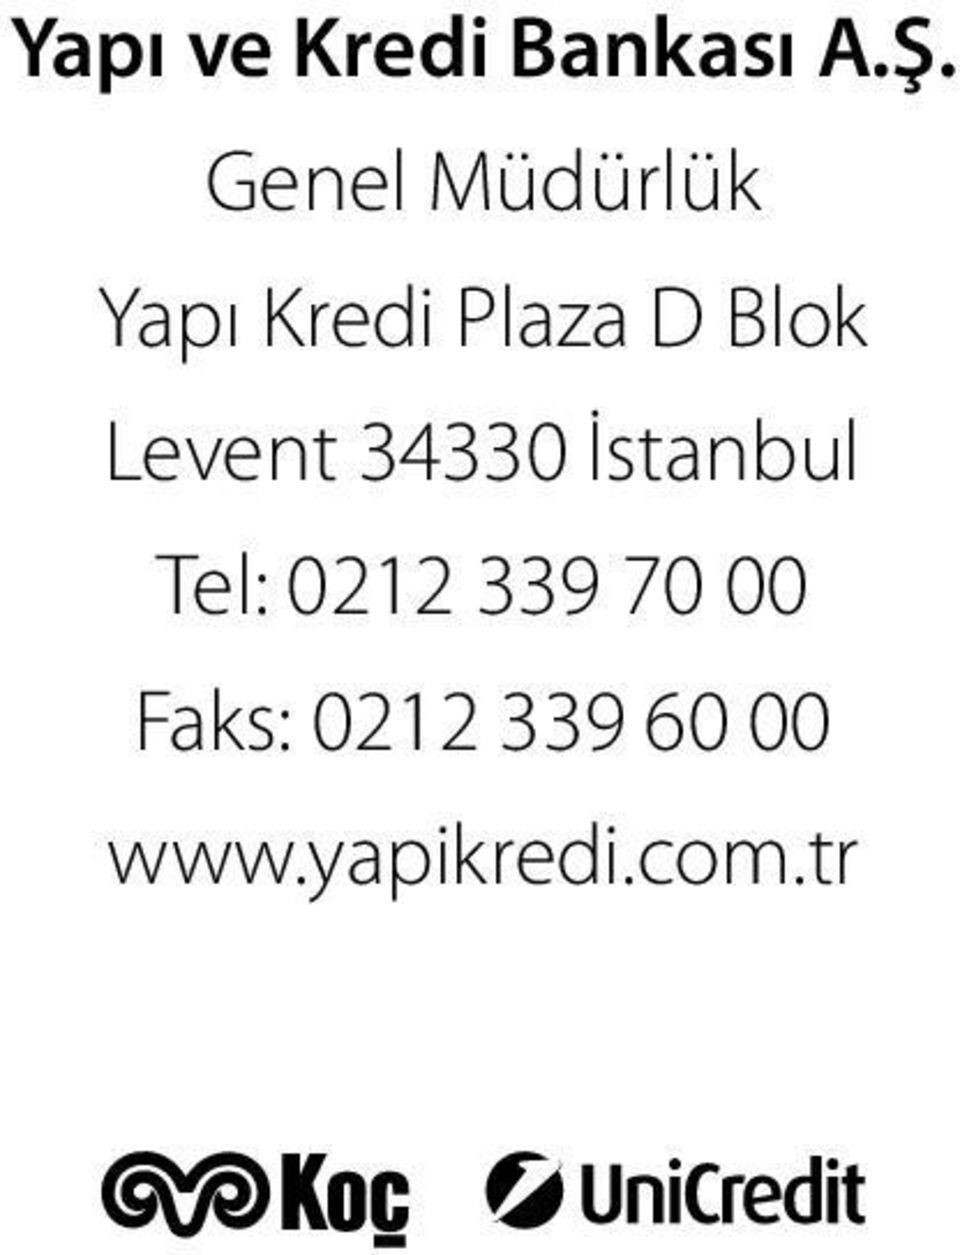 Blok Levent 34330 İstanbul Tel: 0212